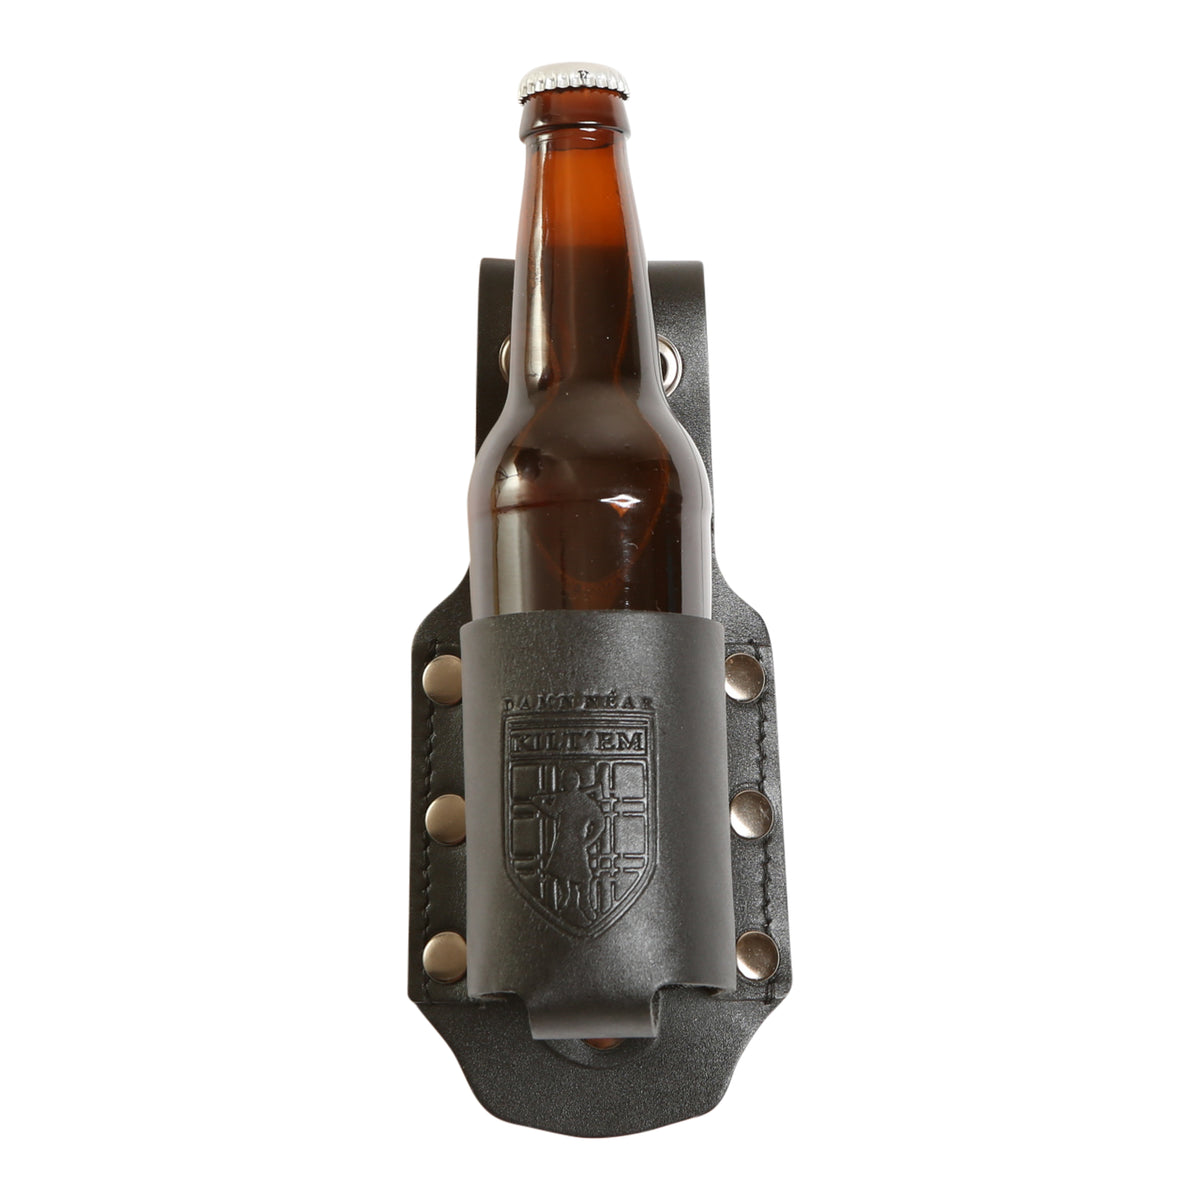 12 oz Standard Bottle Holder - Black Leather Cover